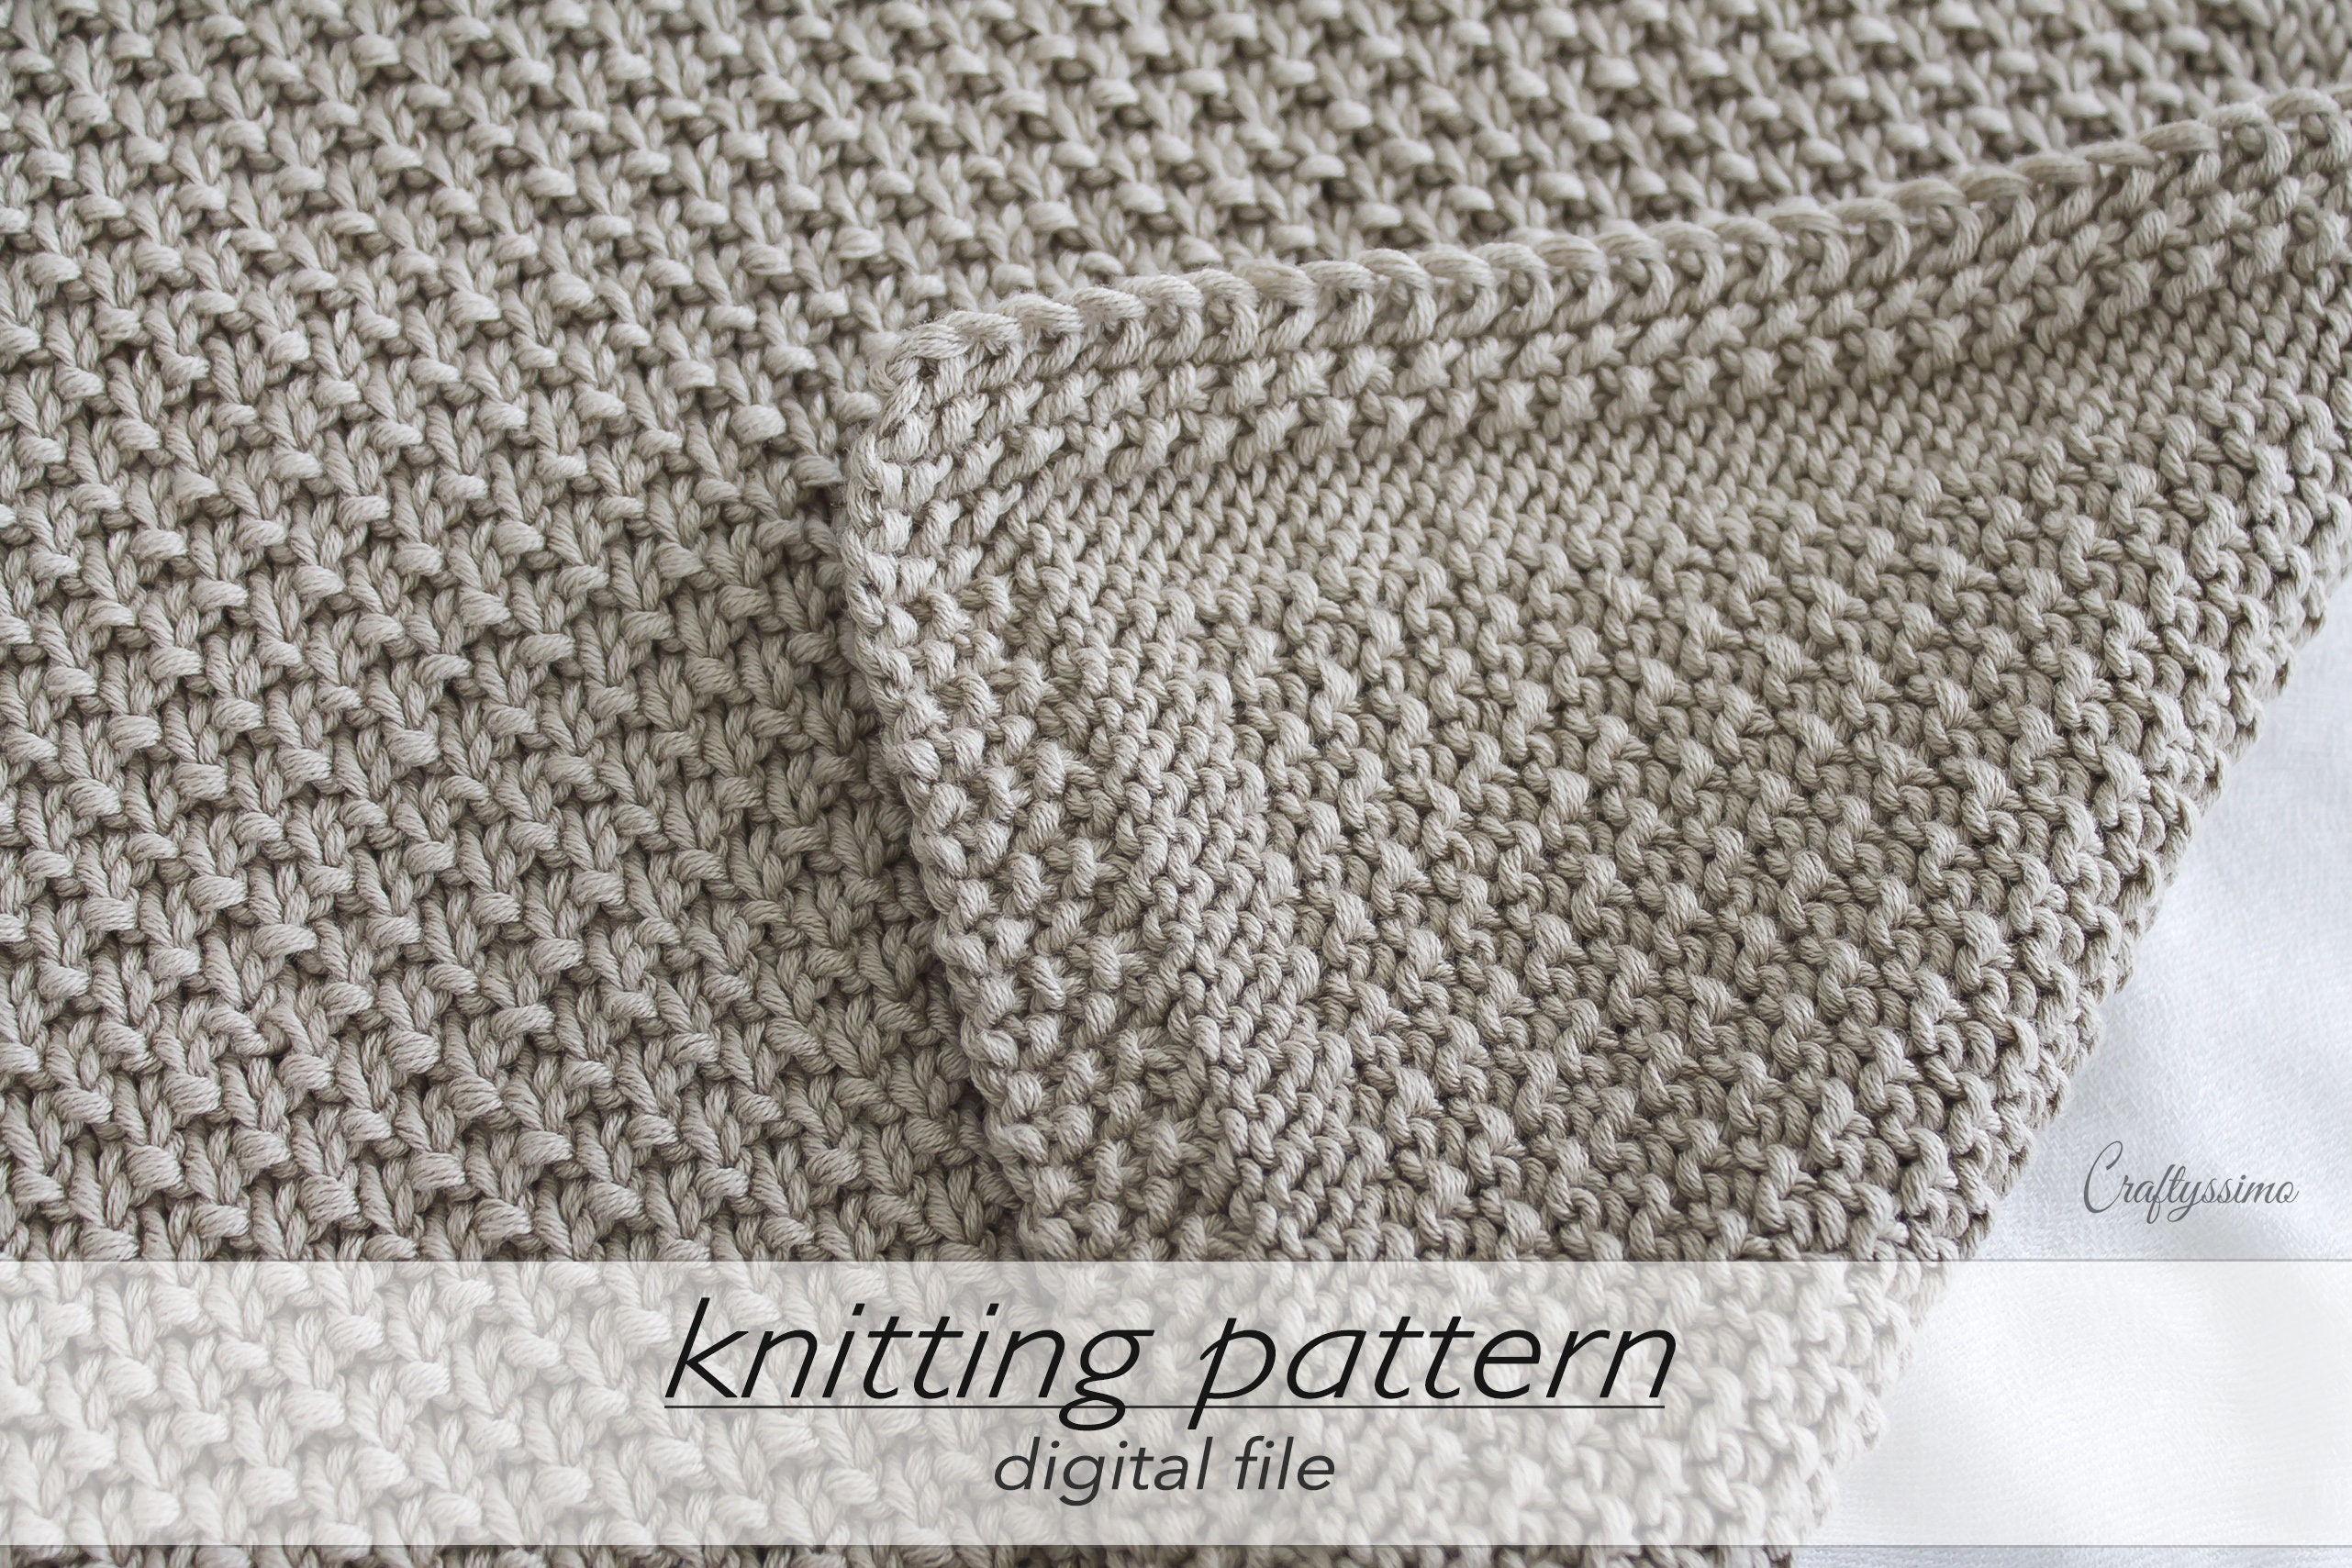 BLANKET KNITTING KIT, Simple 3 Colors Blanket Knitting Kit, Hobby Kits for  Adults, Beginner Diy Knitting Kit, Chunky Wool Blanket Knitting 